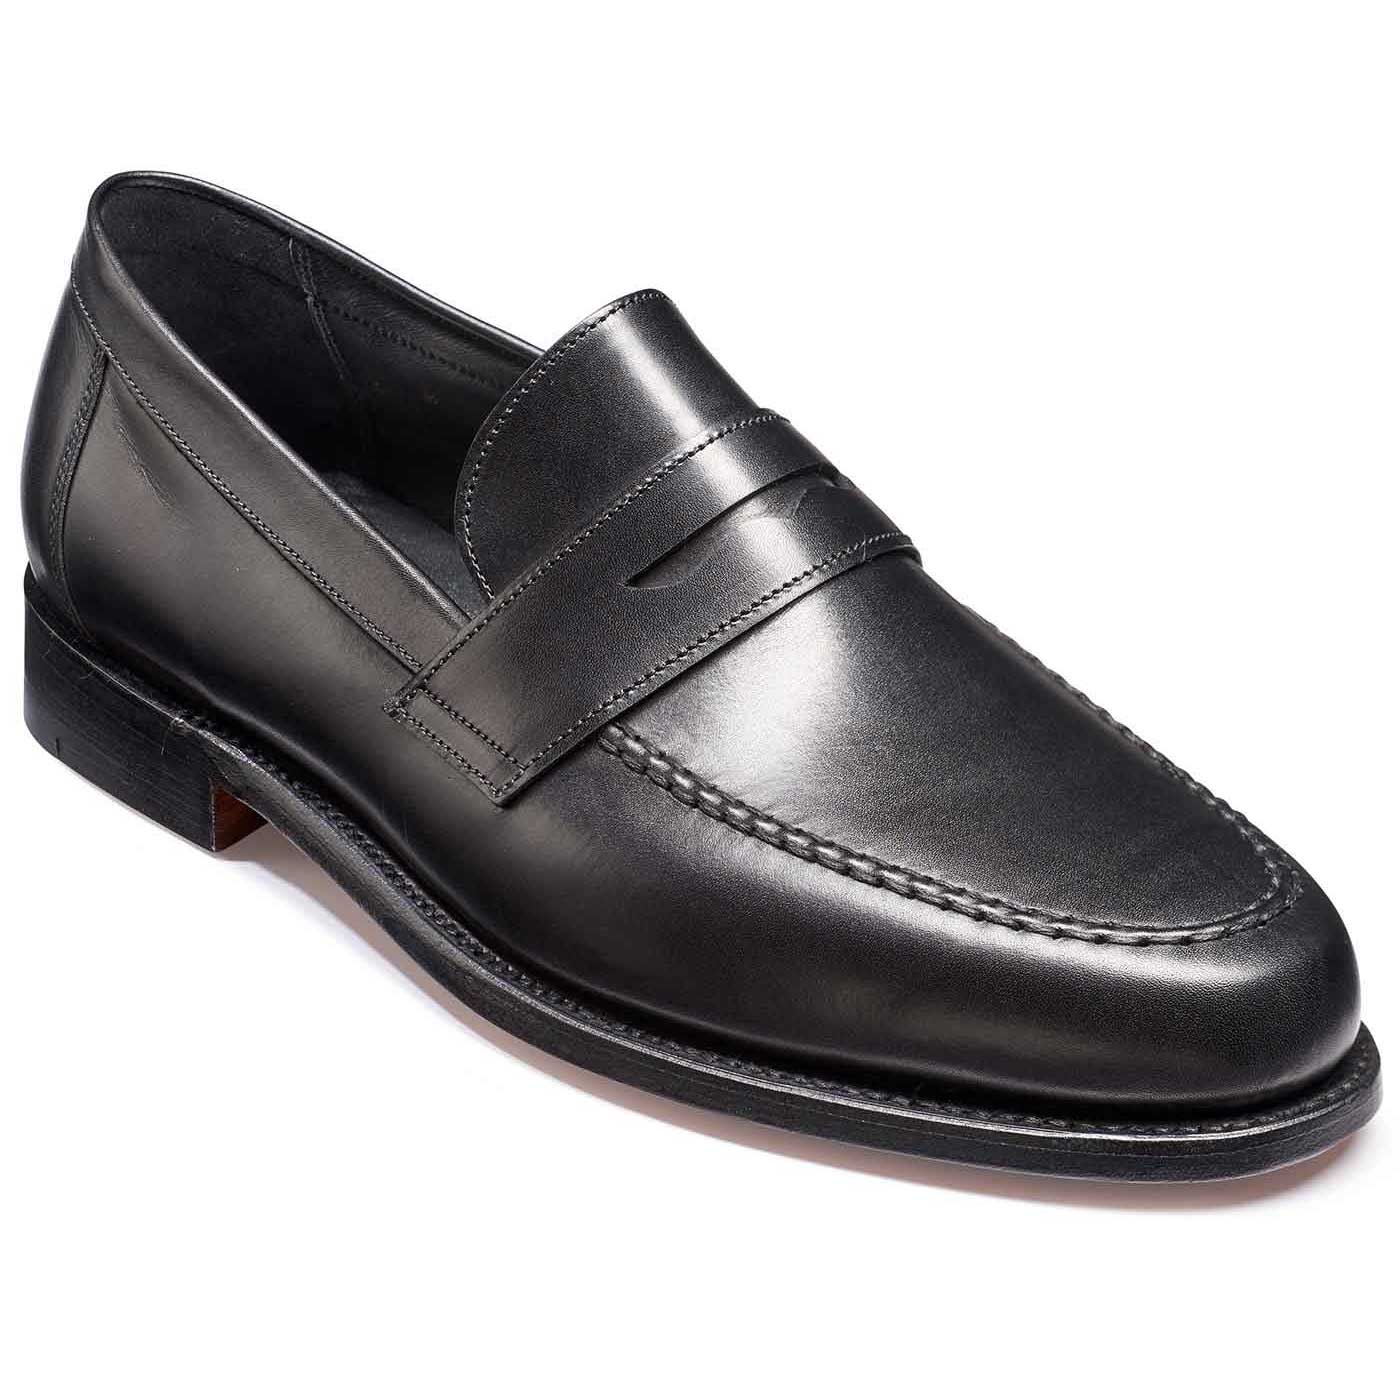 Barker Shoes - Mens Jevington Loafers - Black Calf